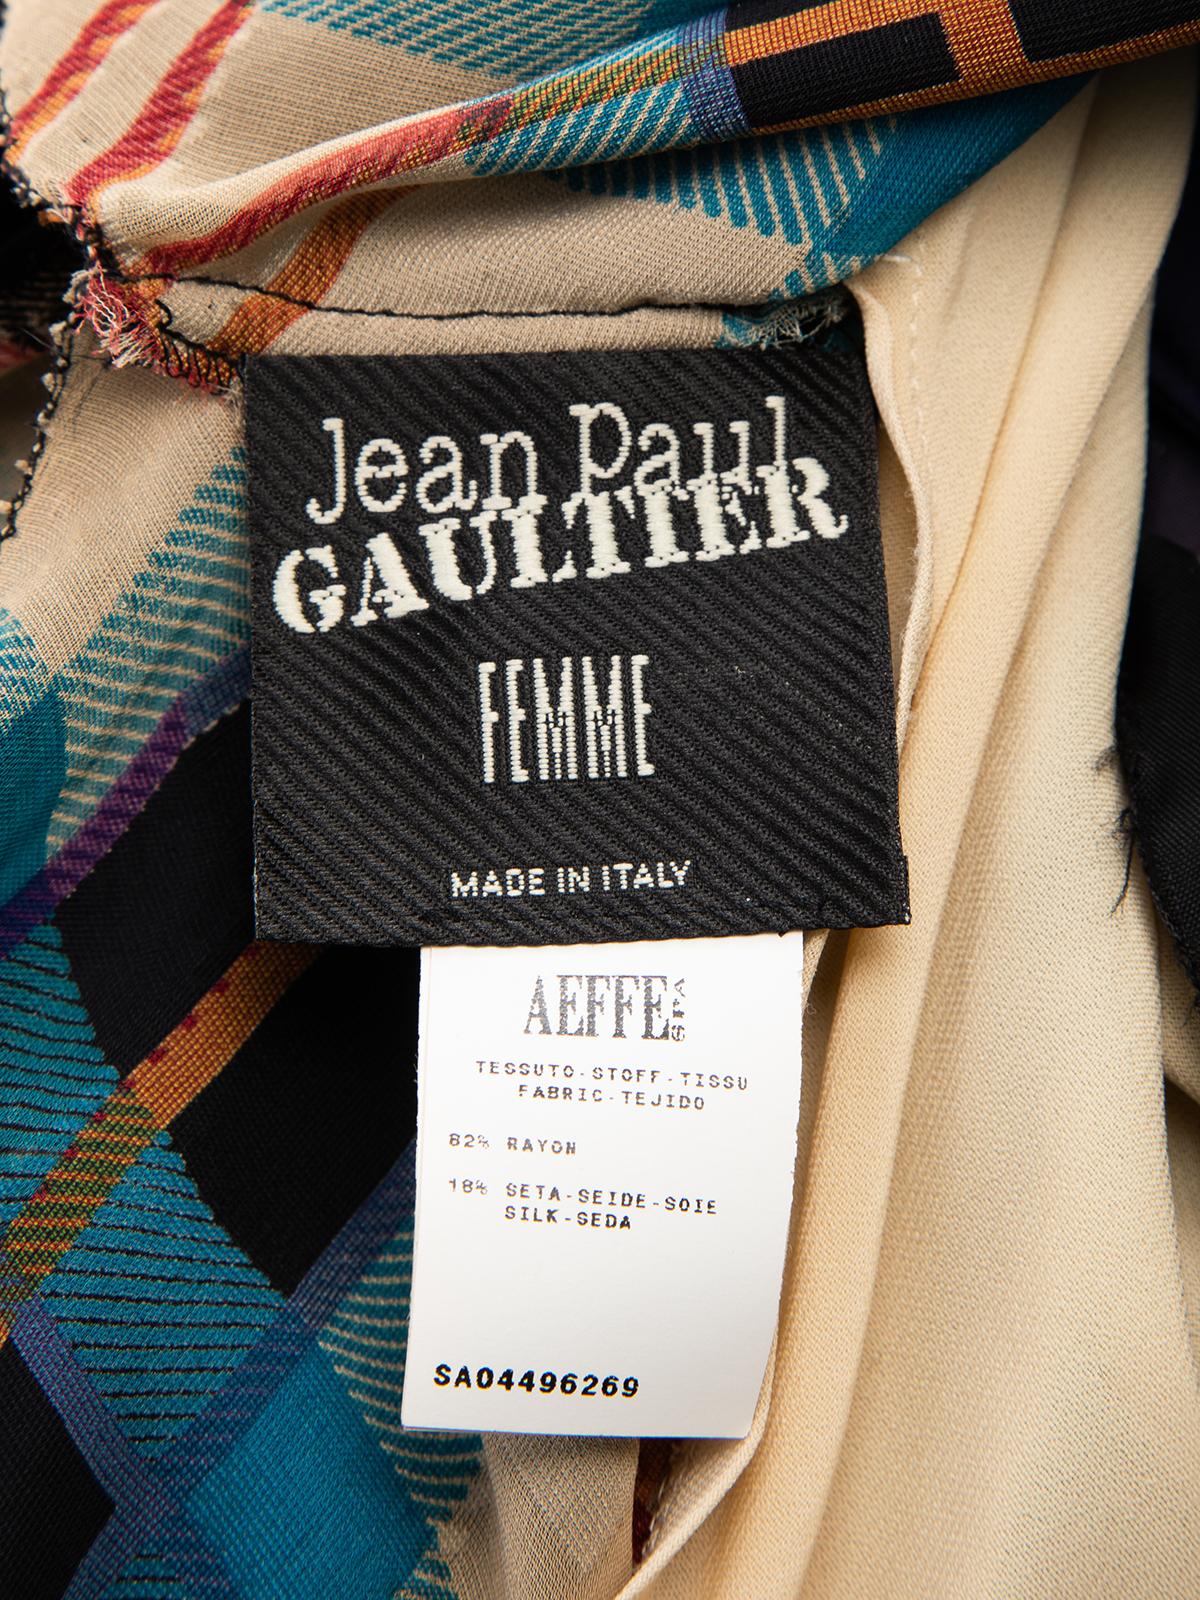 Pre-Loved Jean Paul Gaultier Women's Velvet Tartan Patterned Dress with Leather  3